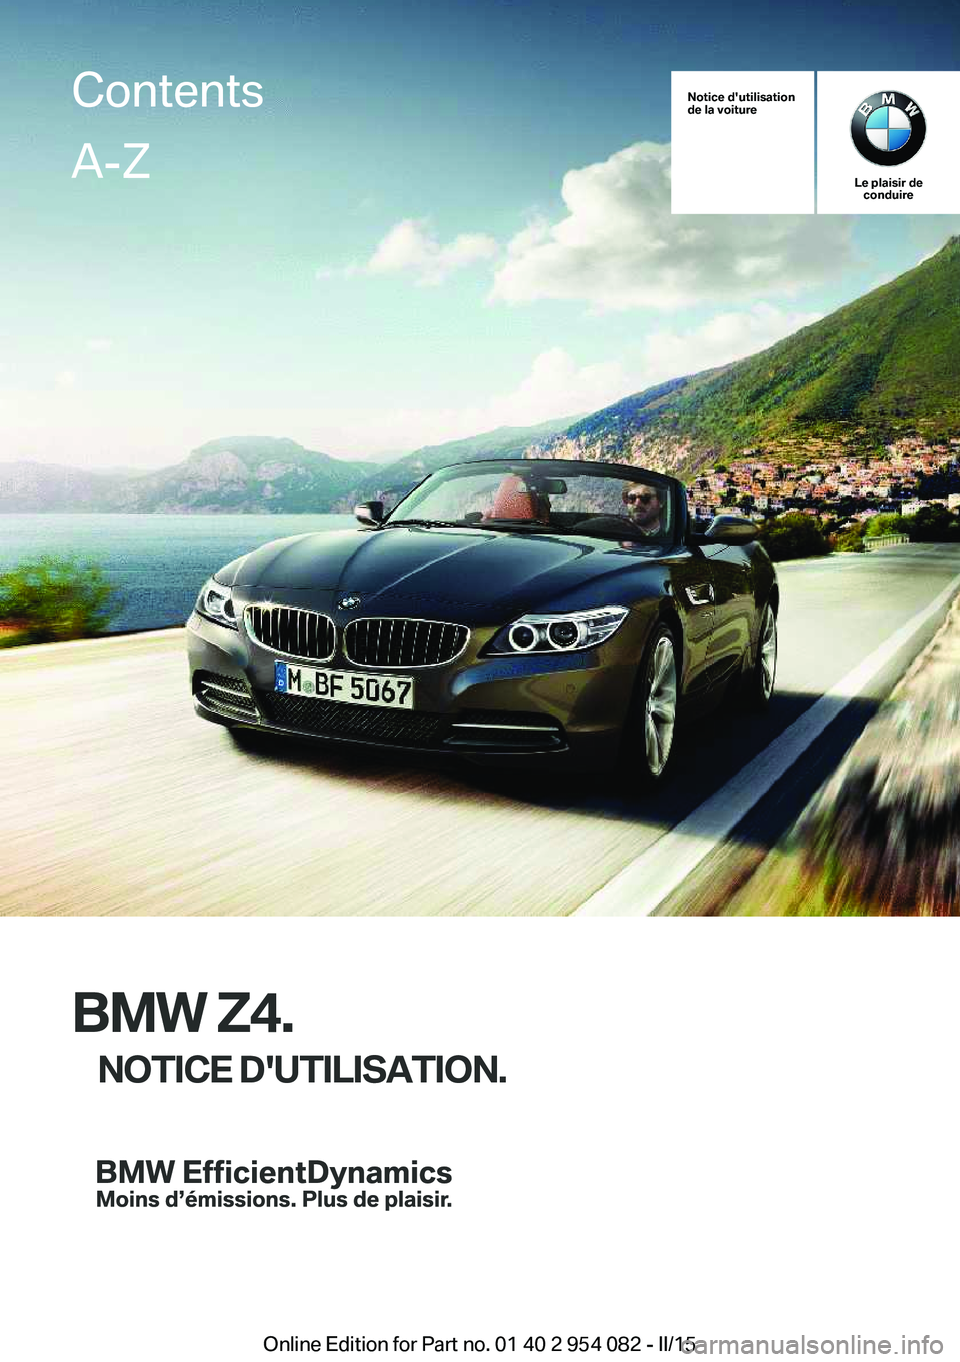 BMW Z4 2016  Notices Demploi (in French) Notice d'utilisation
de la voiture
Le plaisir de conduire
BMW Z4.
NOTICE D'UTILISATION.
ContentsA-Z
Online Edition for Part no. 01 40 2 954 082 - II/15   